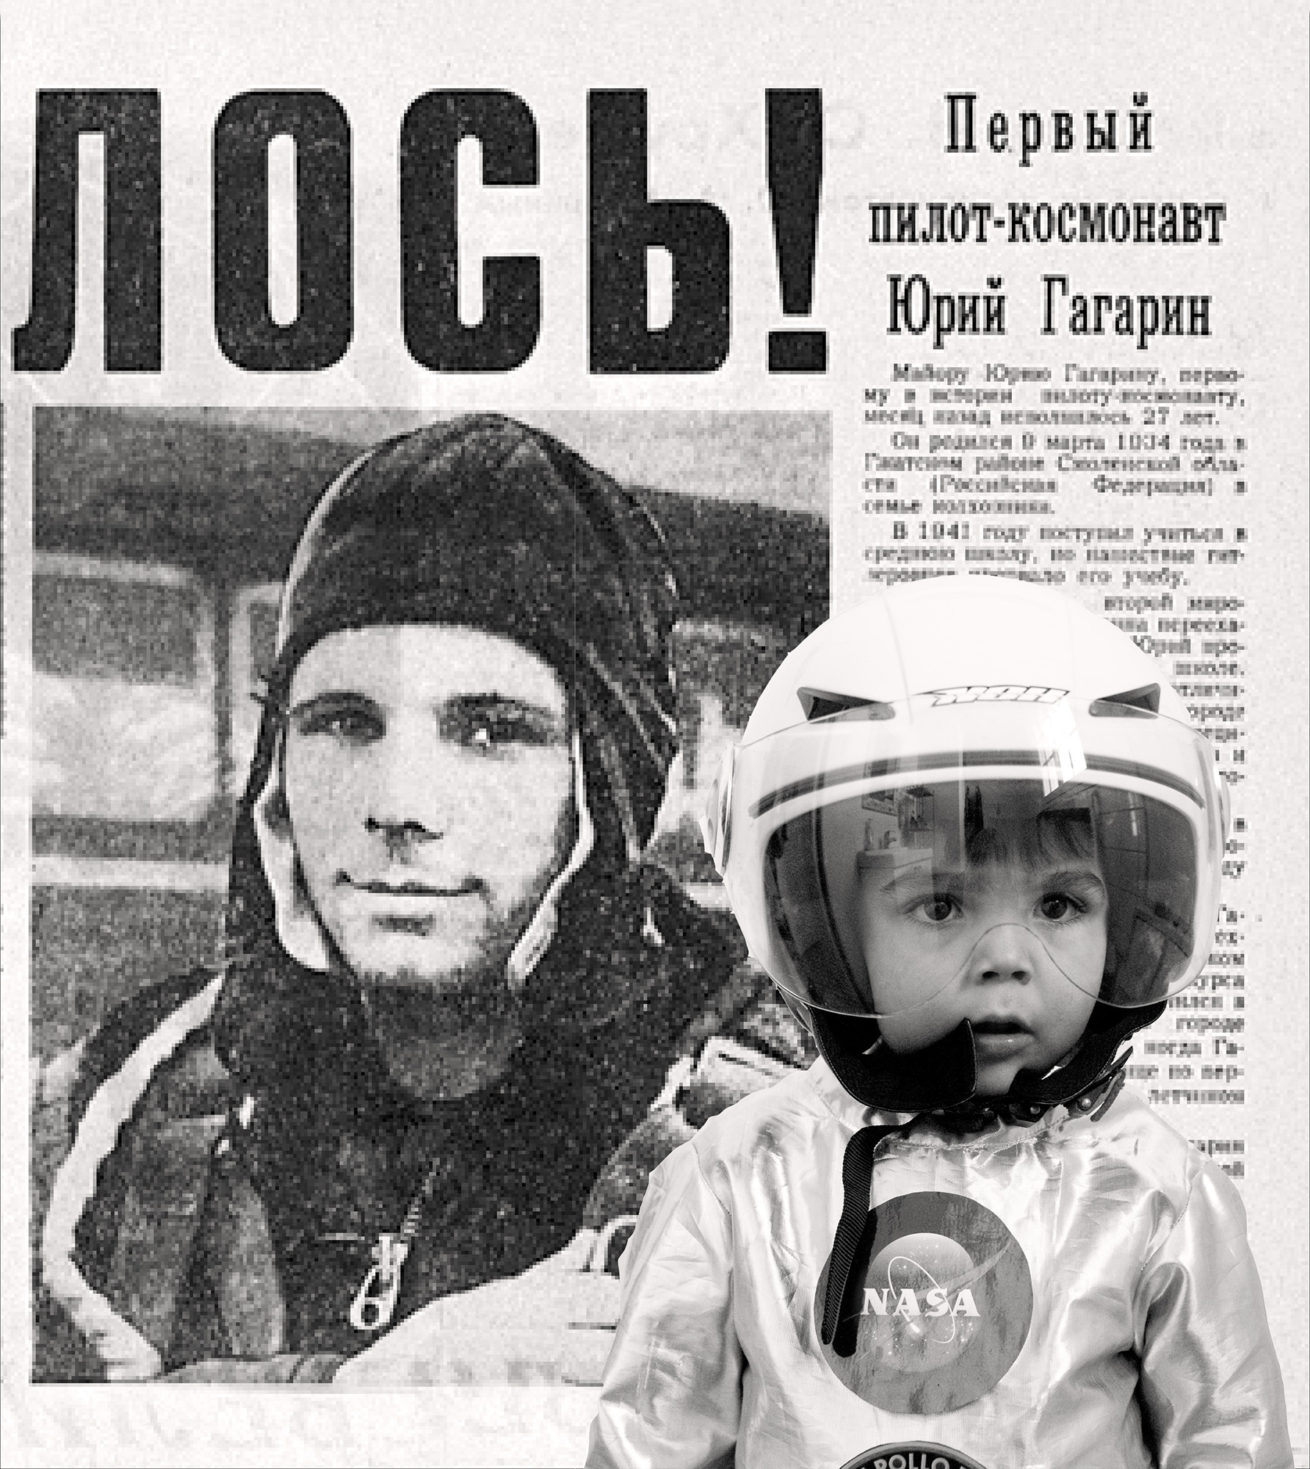 Robin with Gagarin